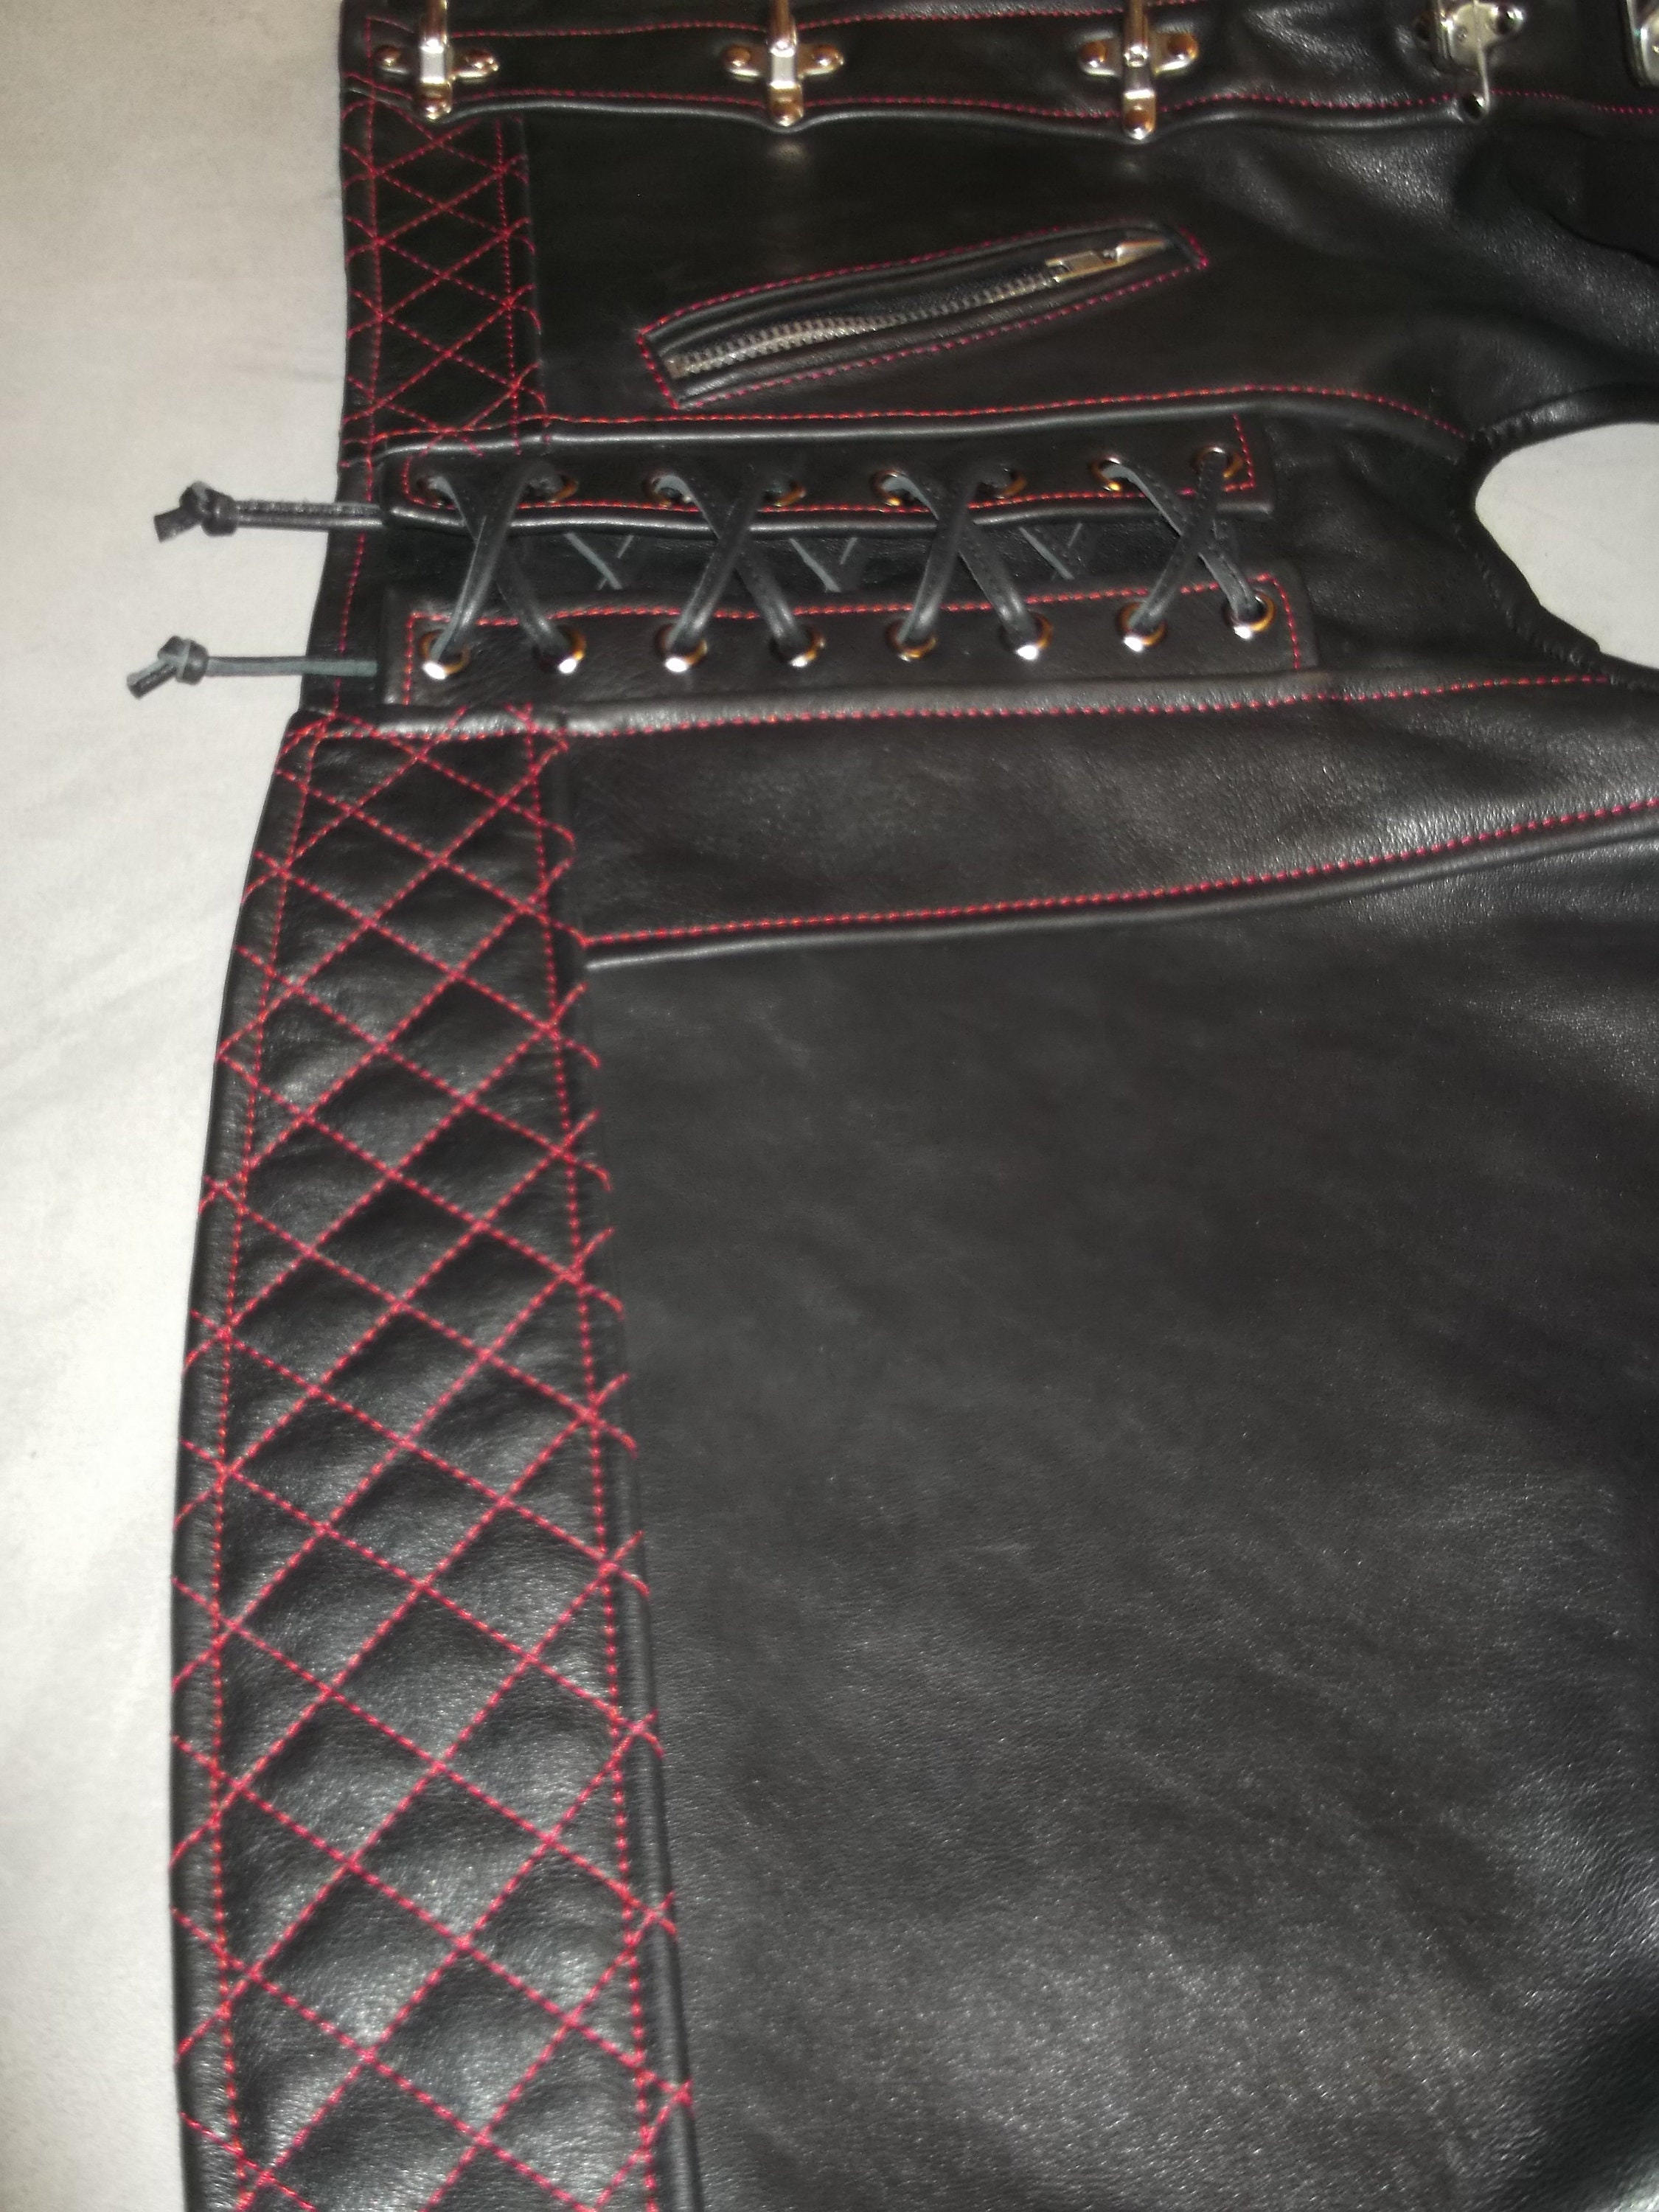 Biker vest genuine leather-18mm-black.Handmade. | Etsy